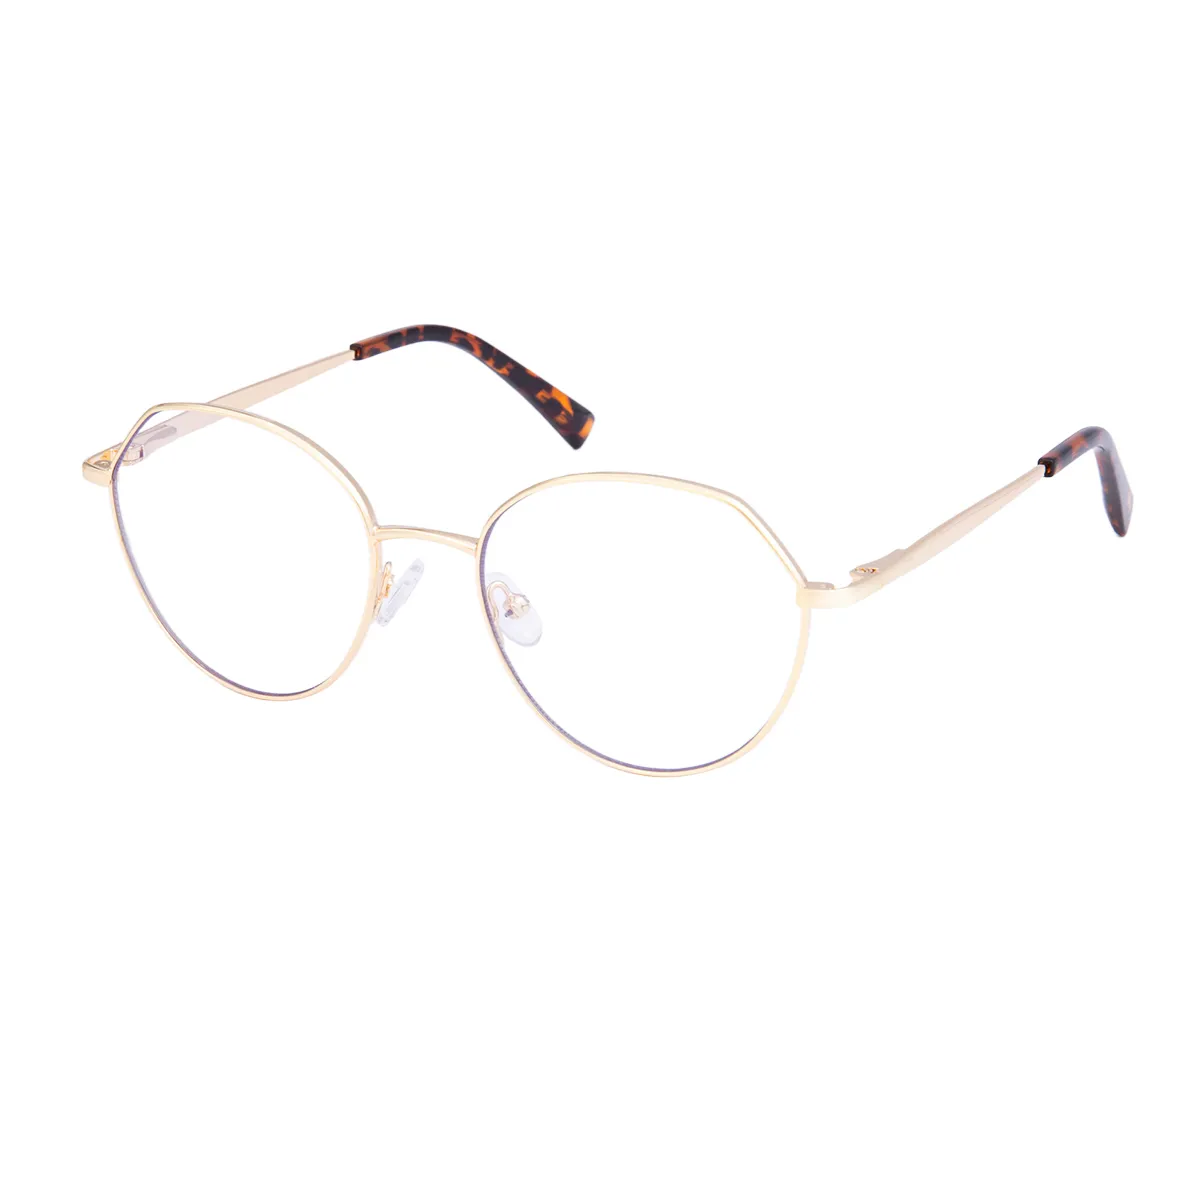 Gwendolyn - Geometric Gold/Tortoiseshell Glasses for Men & Women - EFE